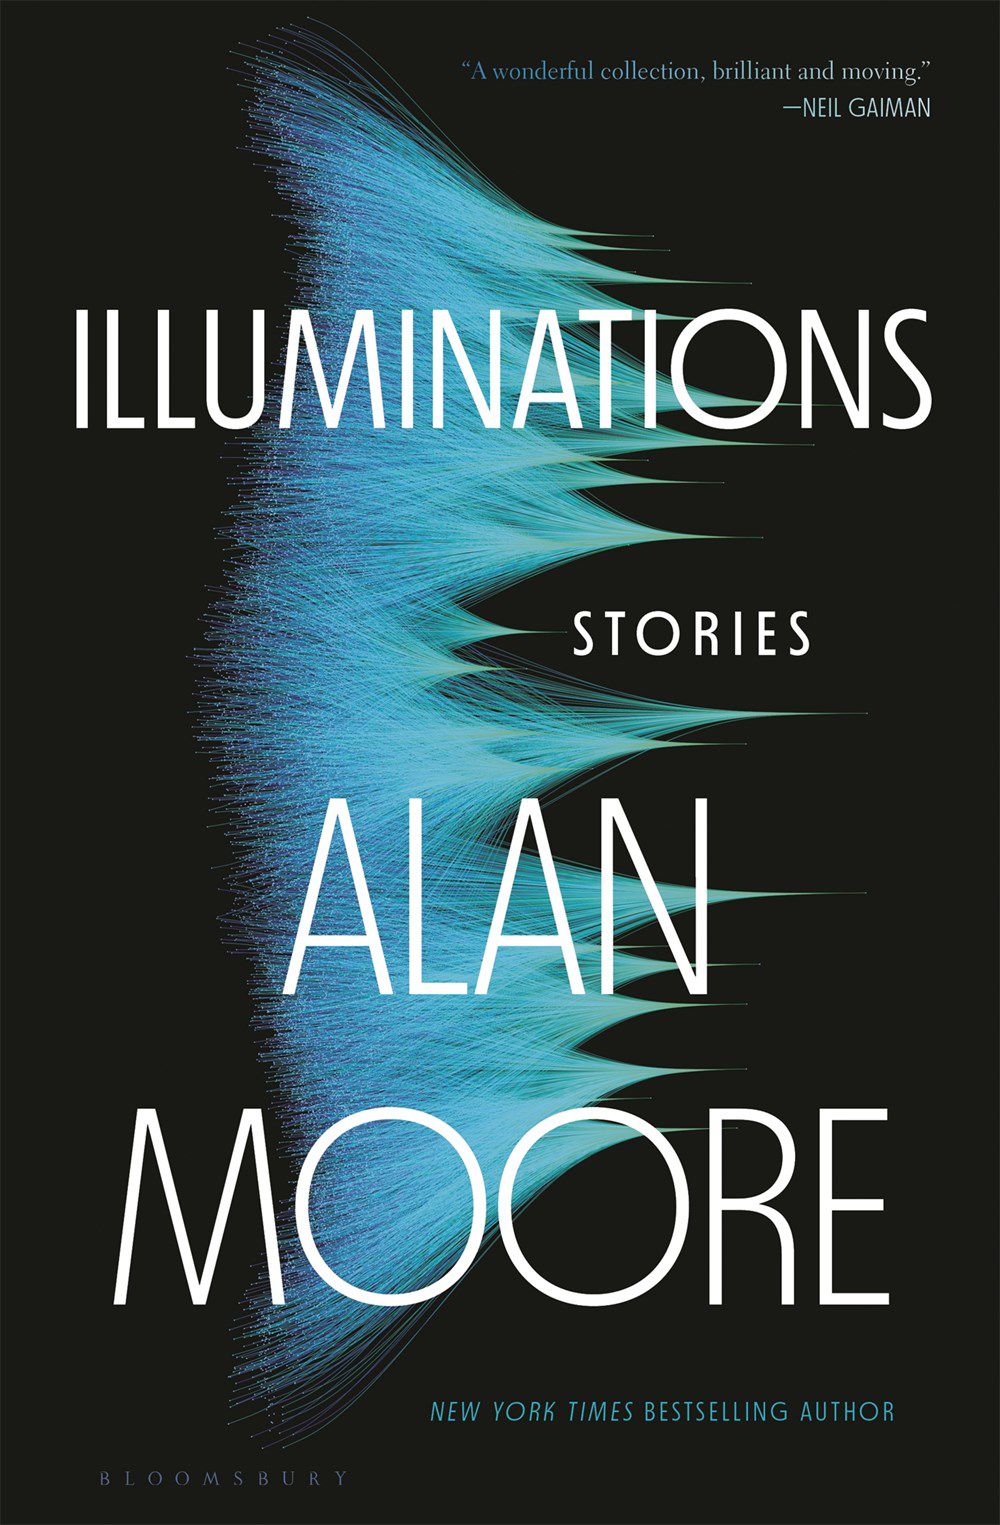 Immagine di copertina per Illuminations di Alan Moore, con un'immagine di quelle che sembrano cime montuose blu oblique